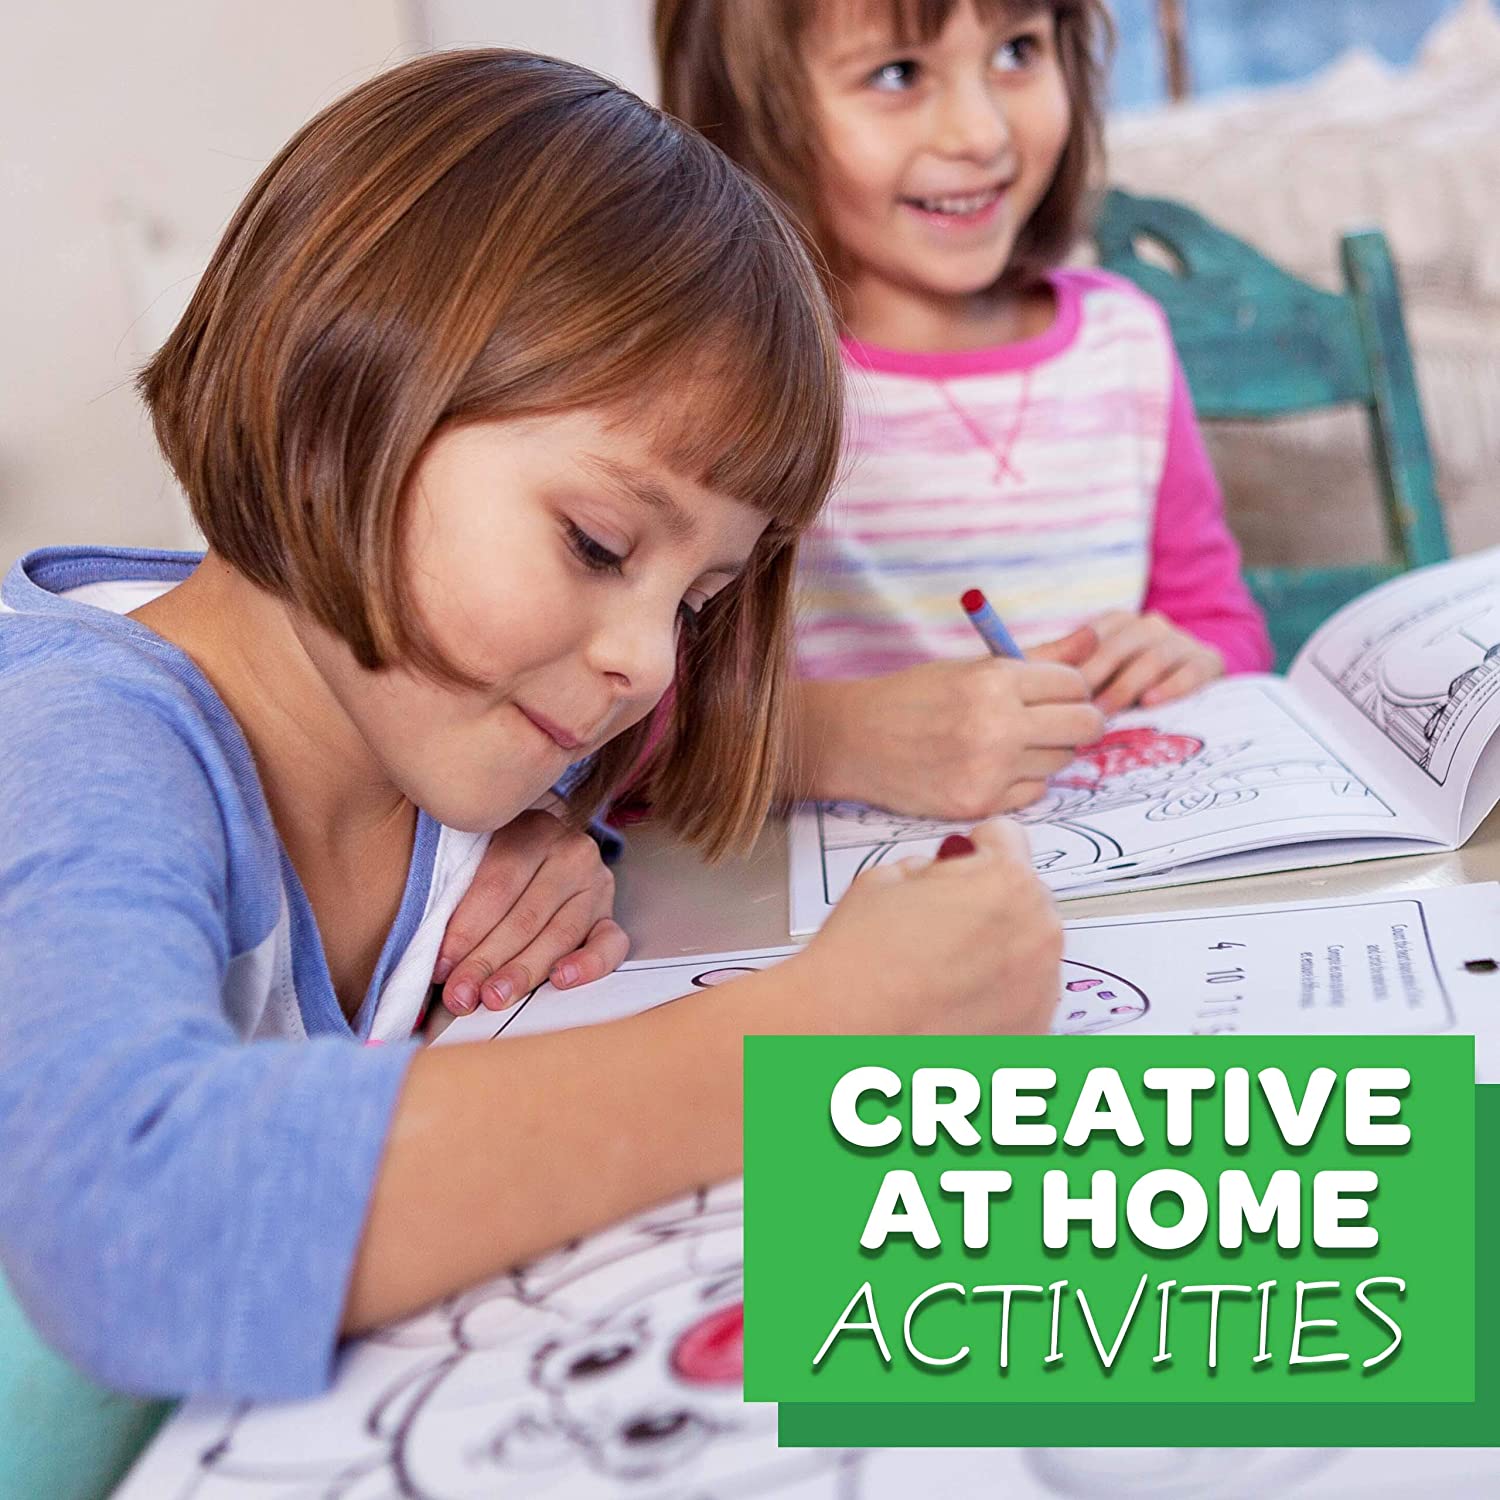 Crayola Oil Pastels, School Supplies, Kids Indoor Activities At Home, 28  Assorted Colors Setup configuration - ToysChoose